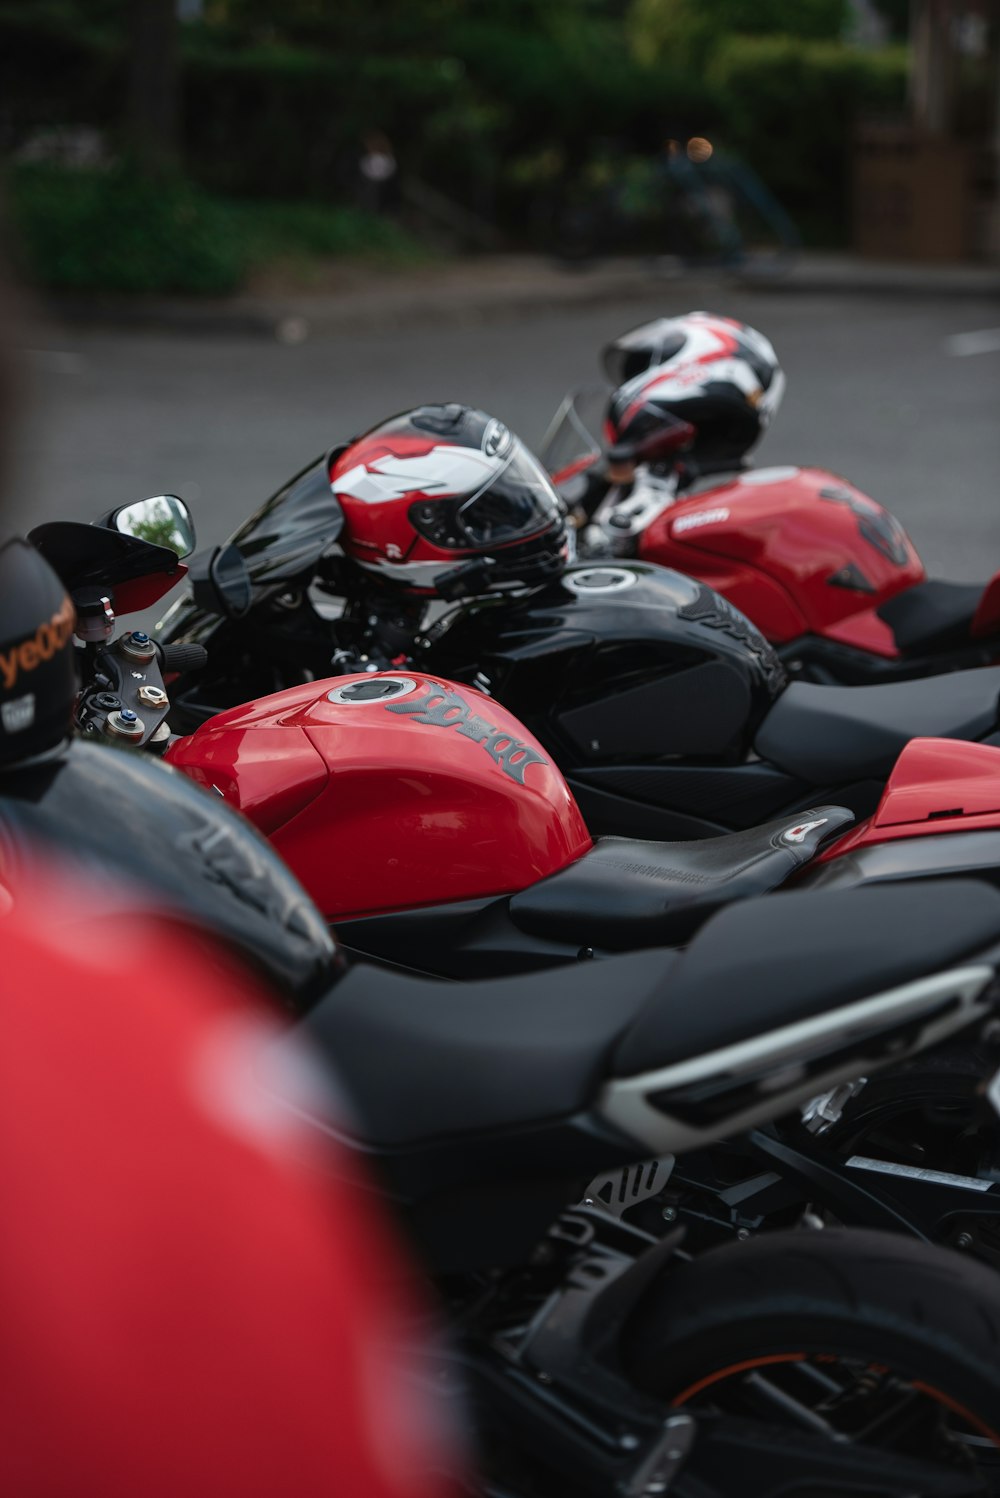 Tres motocicletas negras y rojas